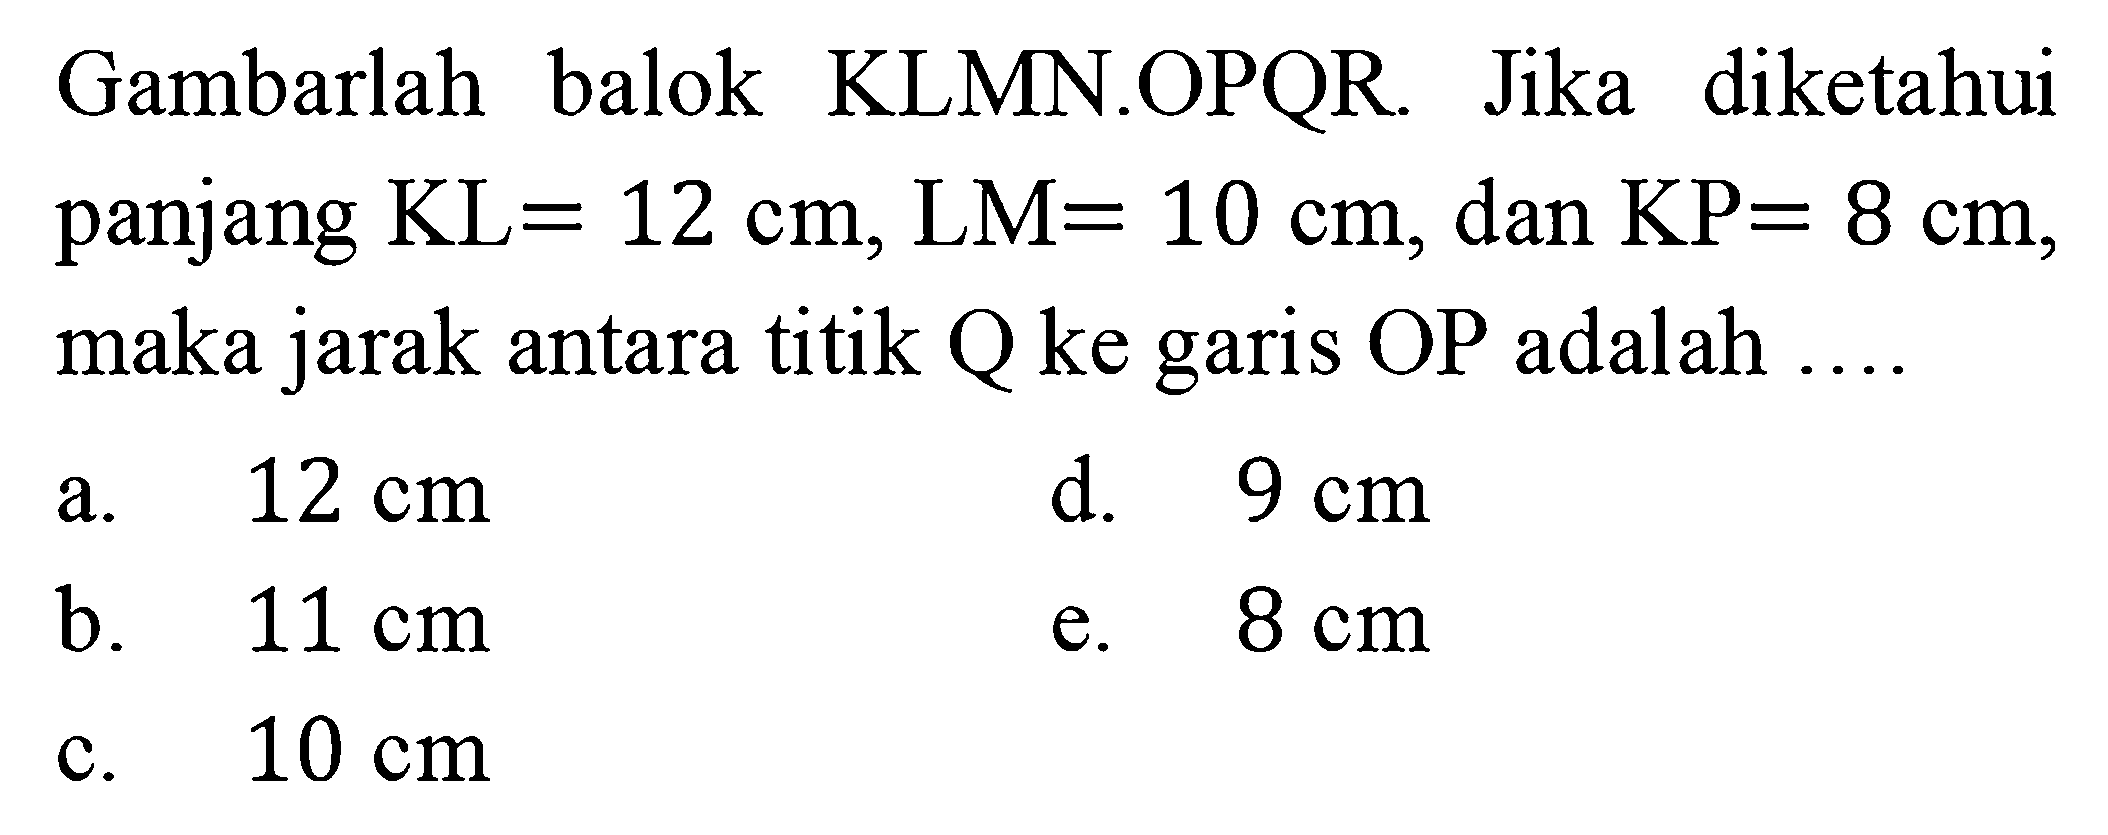 Gambarlah balok KLMN.OPQR Jika diketahui panjang KL=12 cm, LM=10 cm, dan KP=8 cm, maka jarak antara titik Q ke garis OP adalah a. 12 cm d. 9 cm b. 11 cm e. 8 cm c. 10 cm